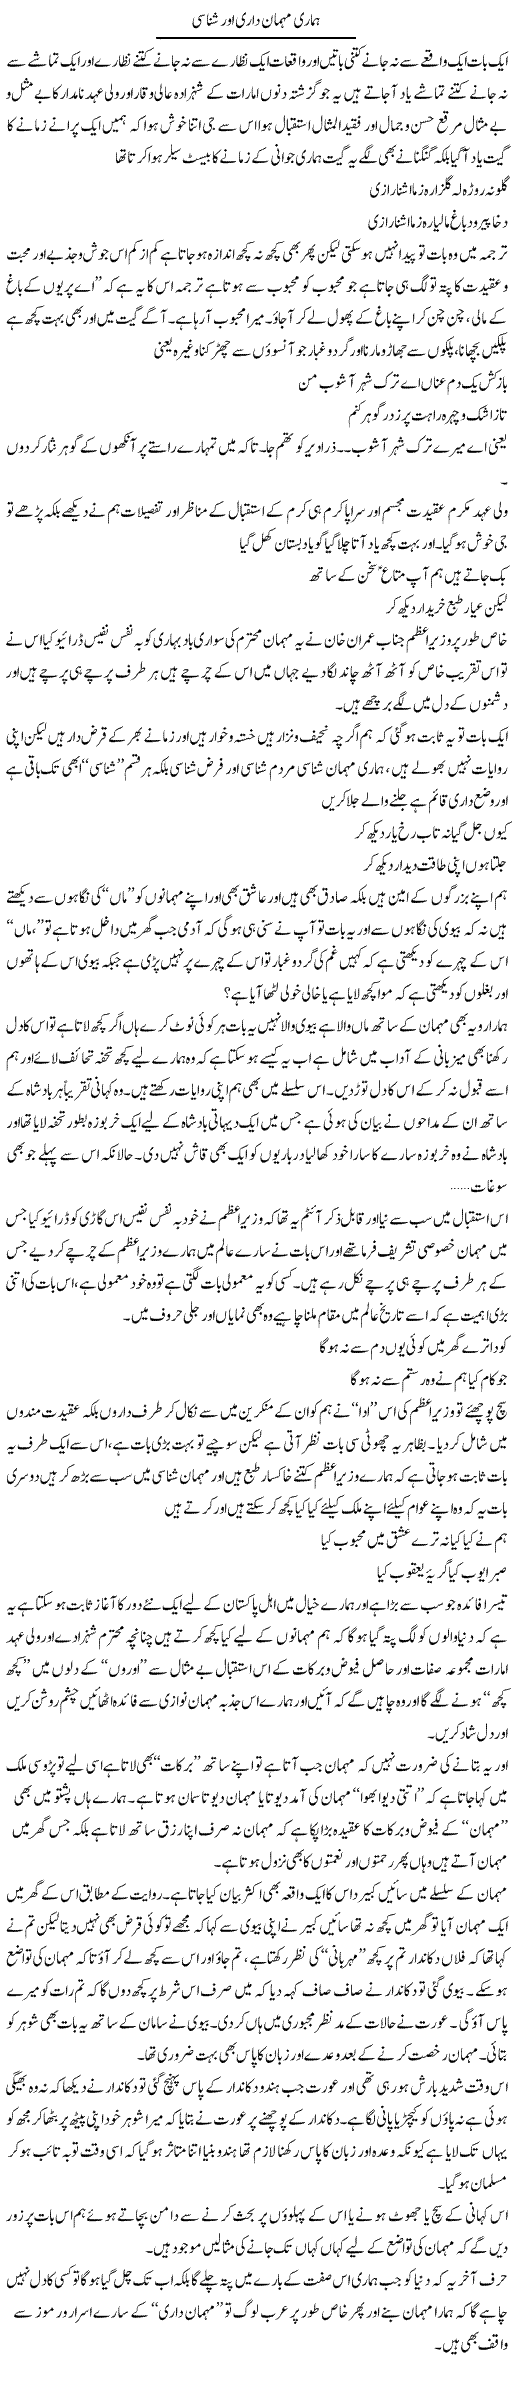 Hamari Maheman Daari Aur Shanasi | Saad Ullah Jan Barq | Daily Urdu Columns